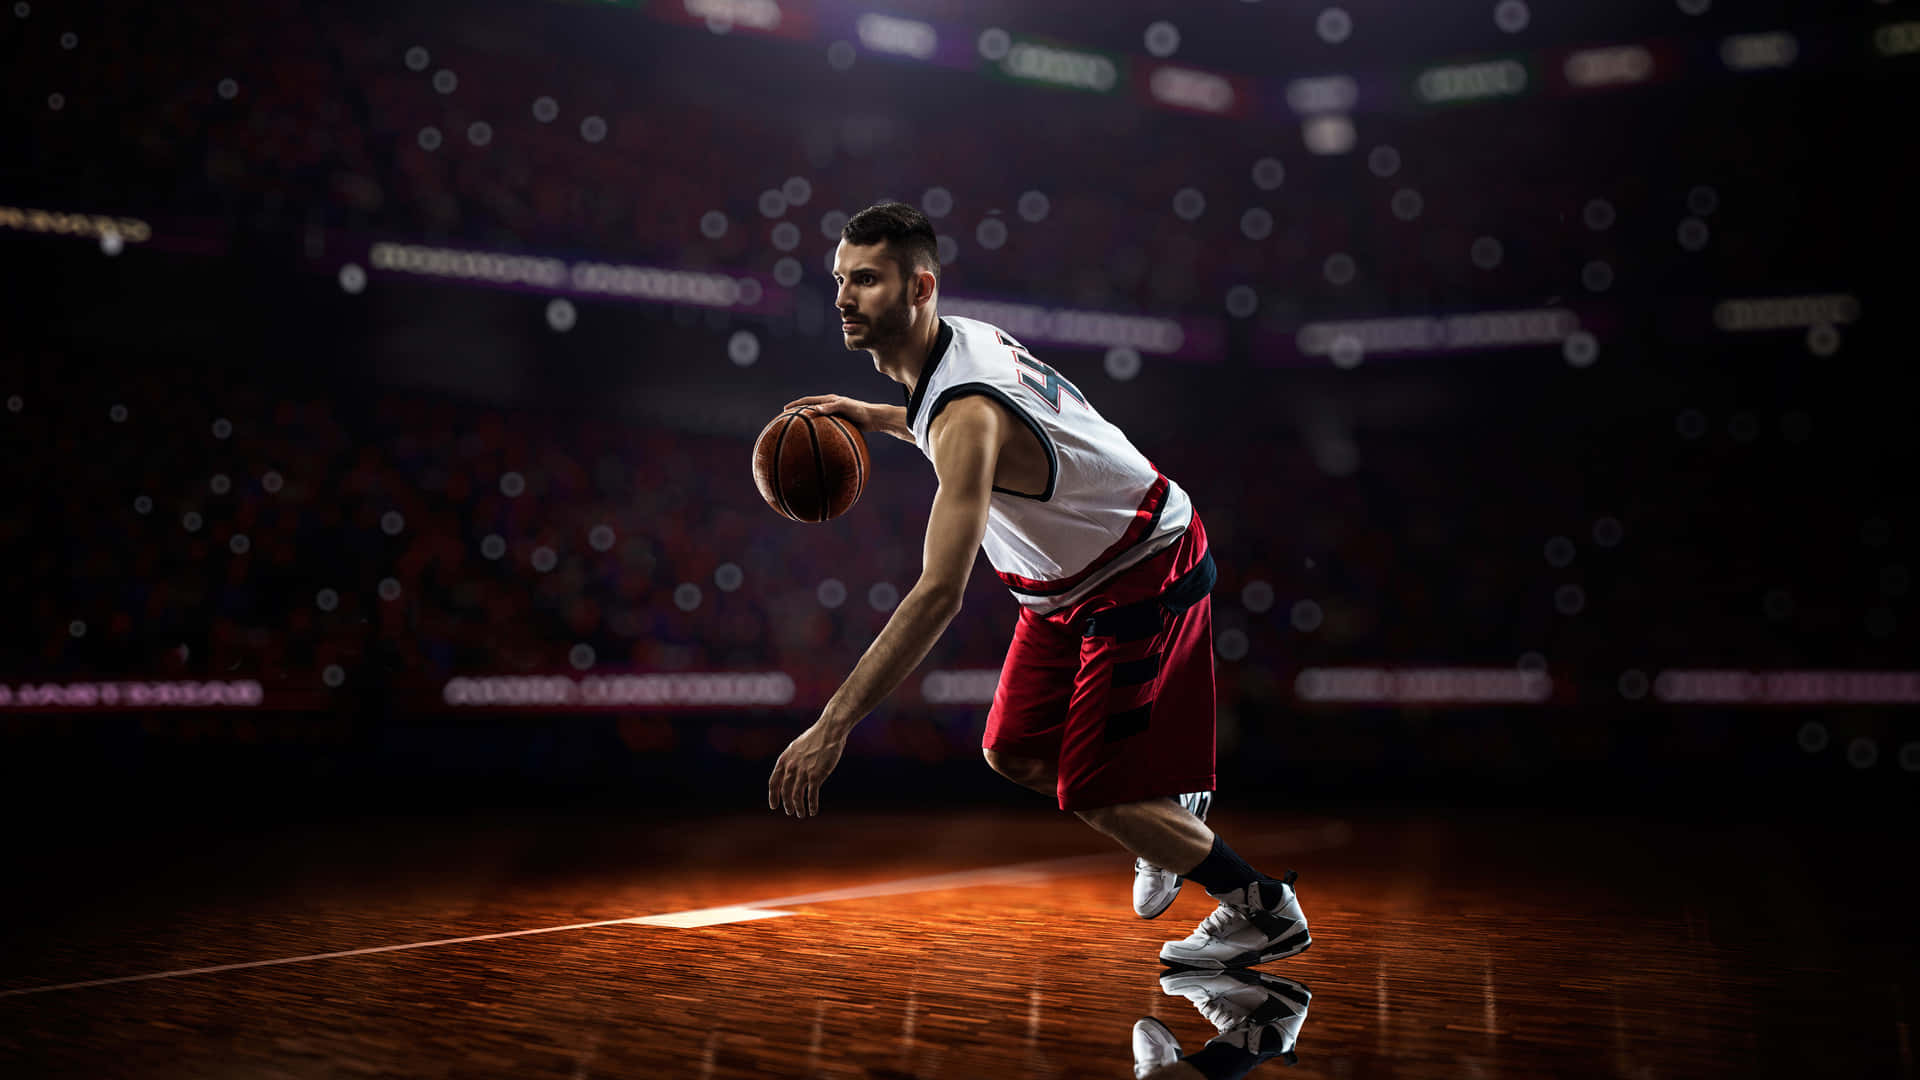 Verbesseredeine Basketball-fähigkeiten Auf Das Nächste Level In 1080p!